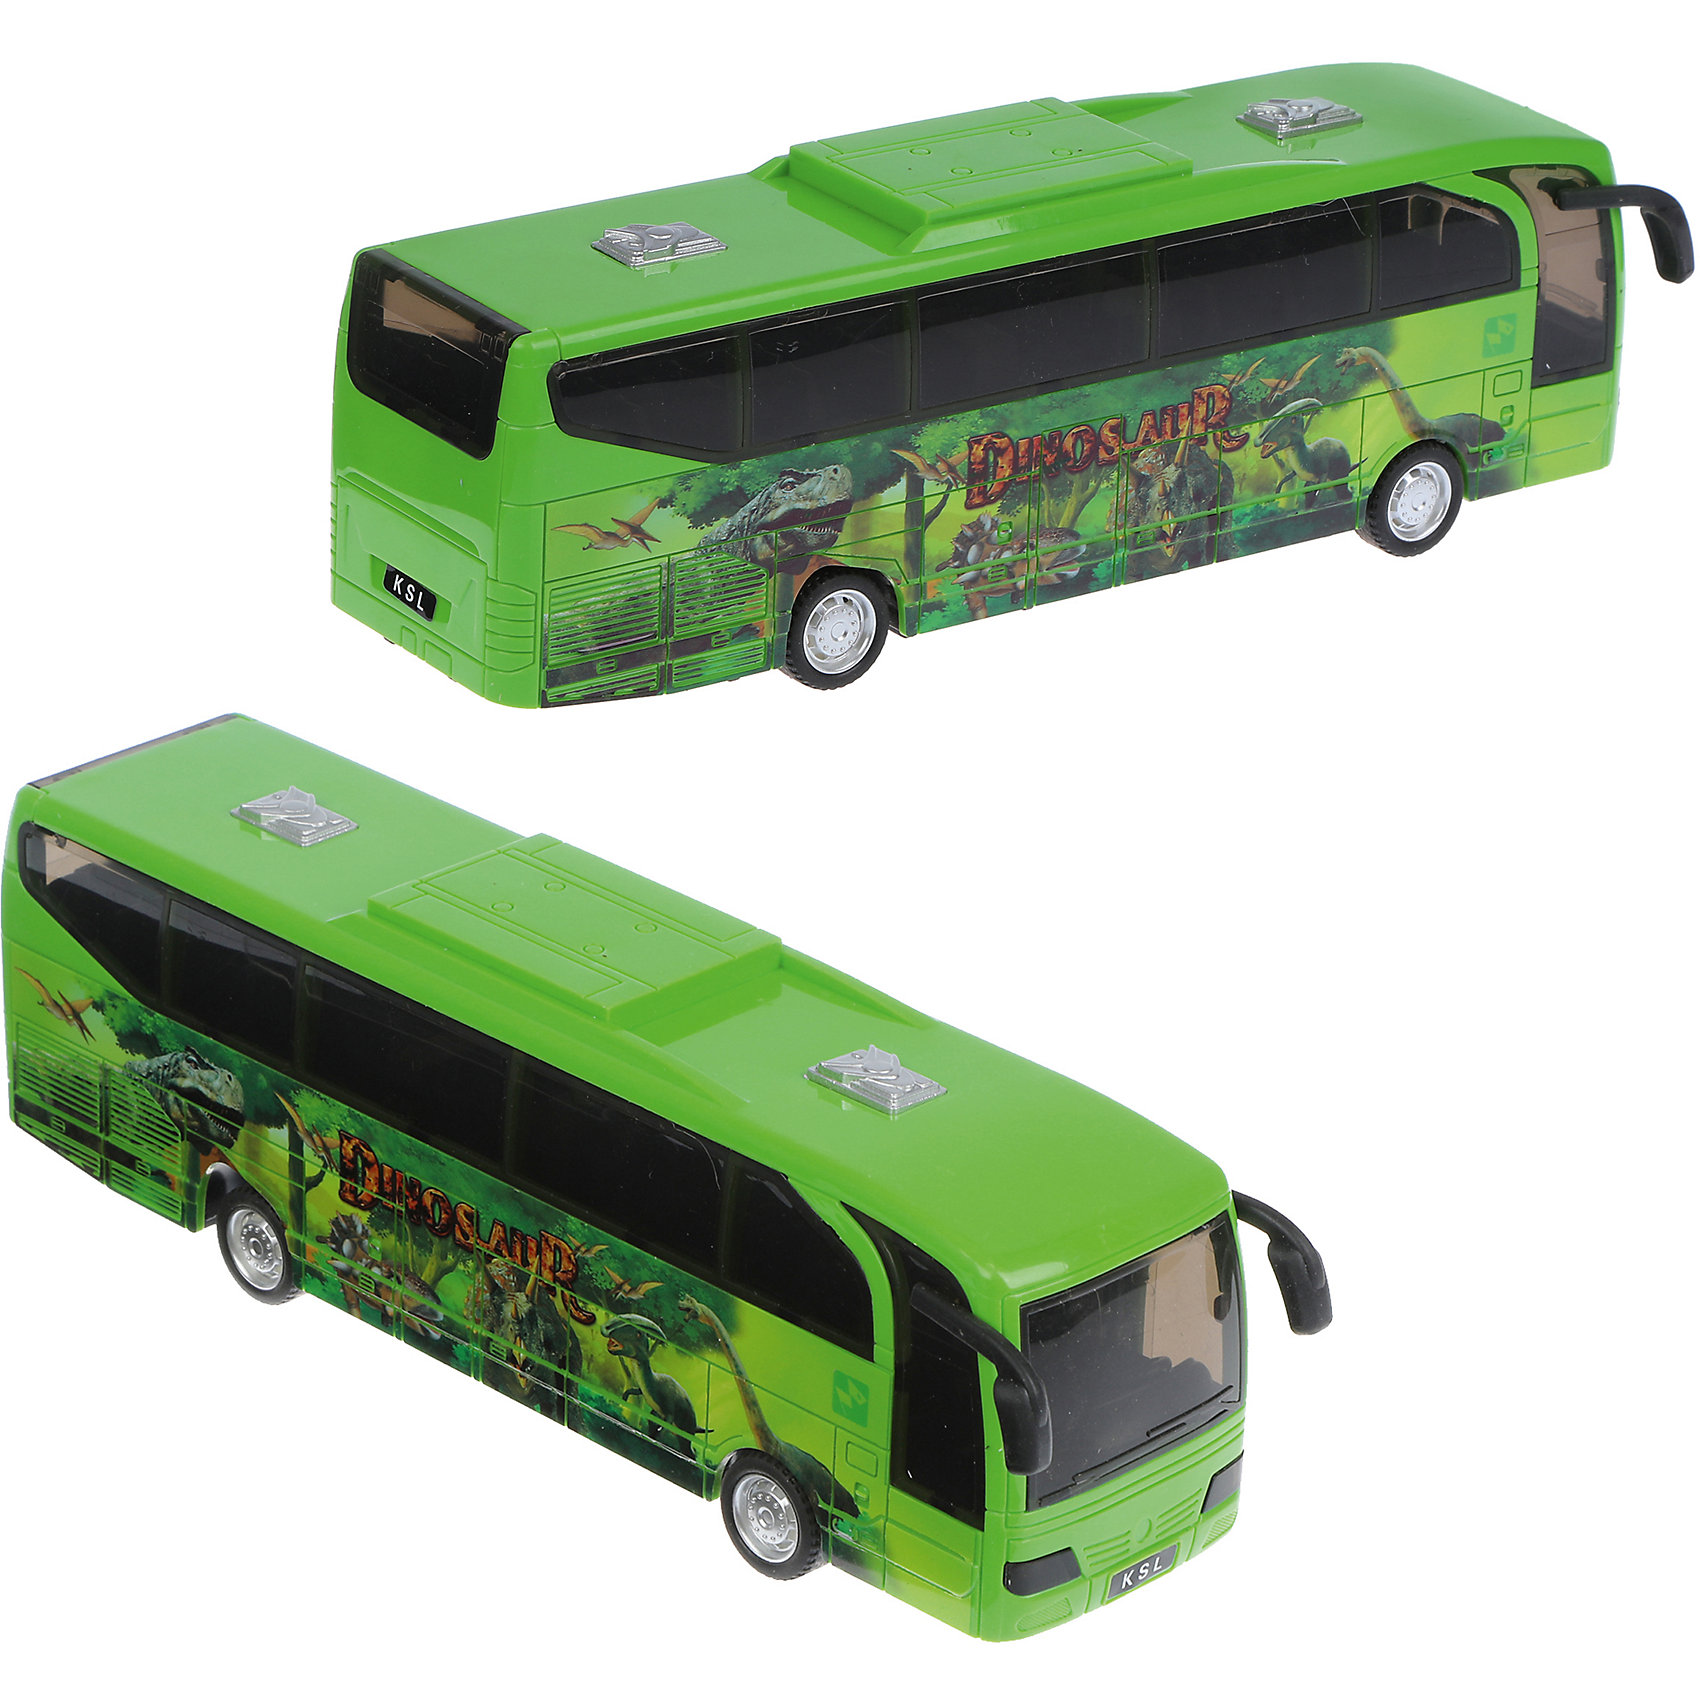 фото Автобус наша игрушка model series dinosaur, инерционный